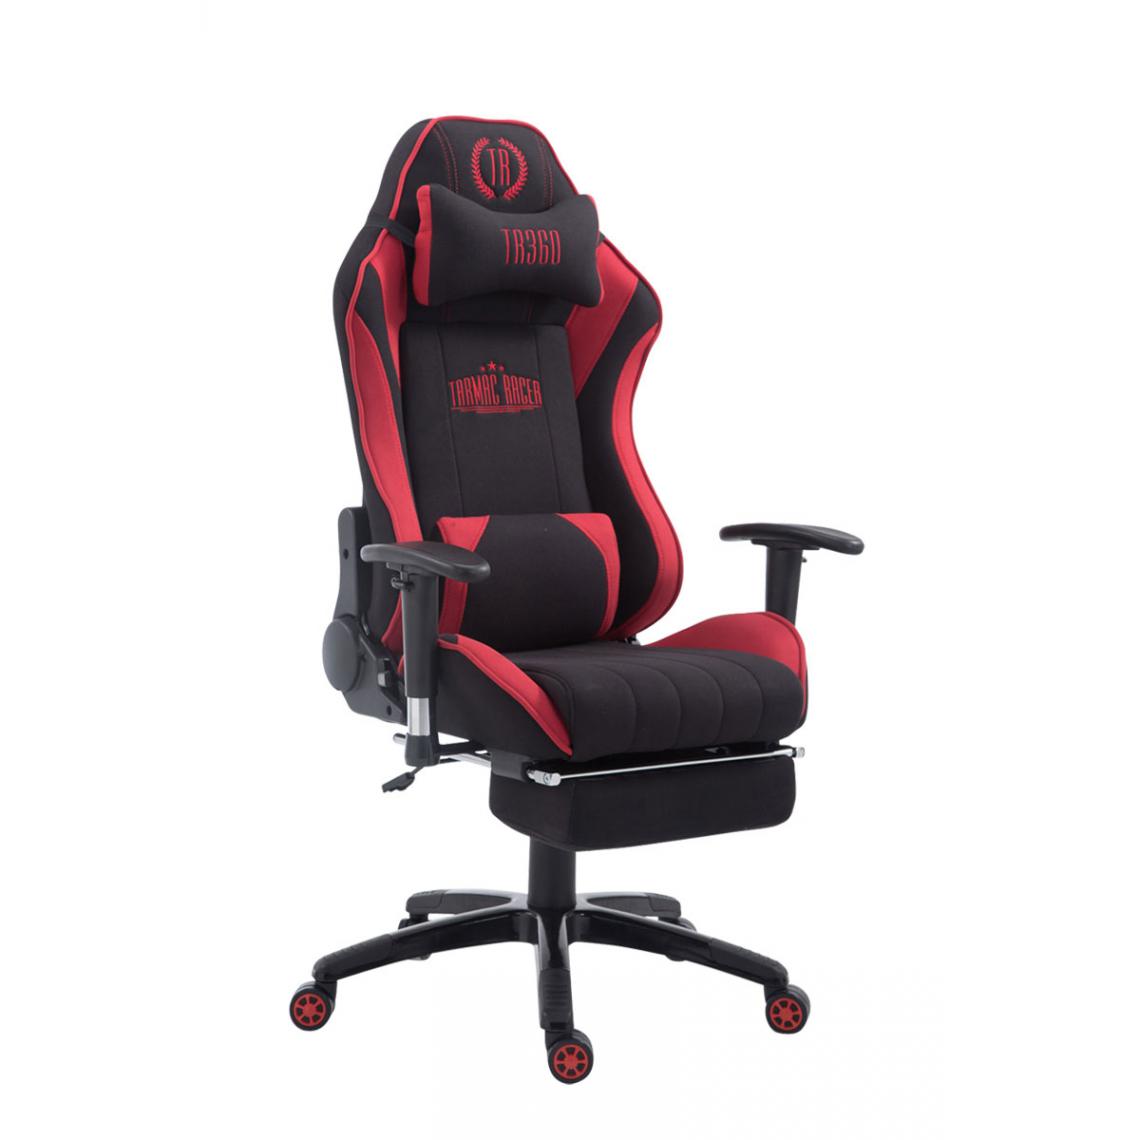 Icaverne - Stylé Chaise de bureau selection Luanda Shift en tissu avec repose-pieds couleur noir rouge - Chaises